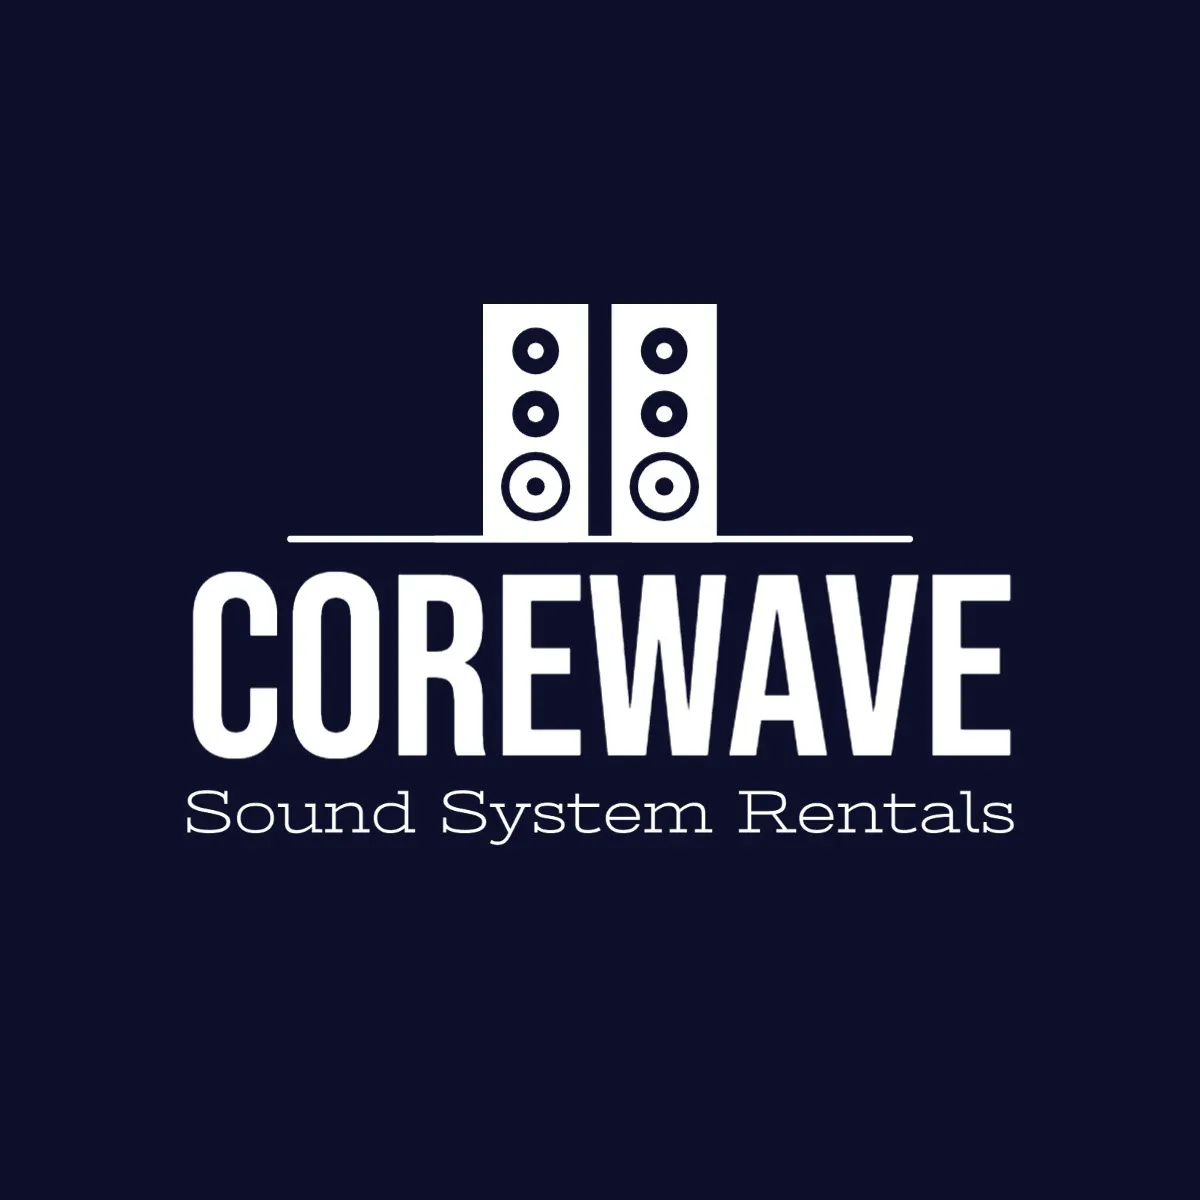 Navy and White Sound System Logo